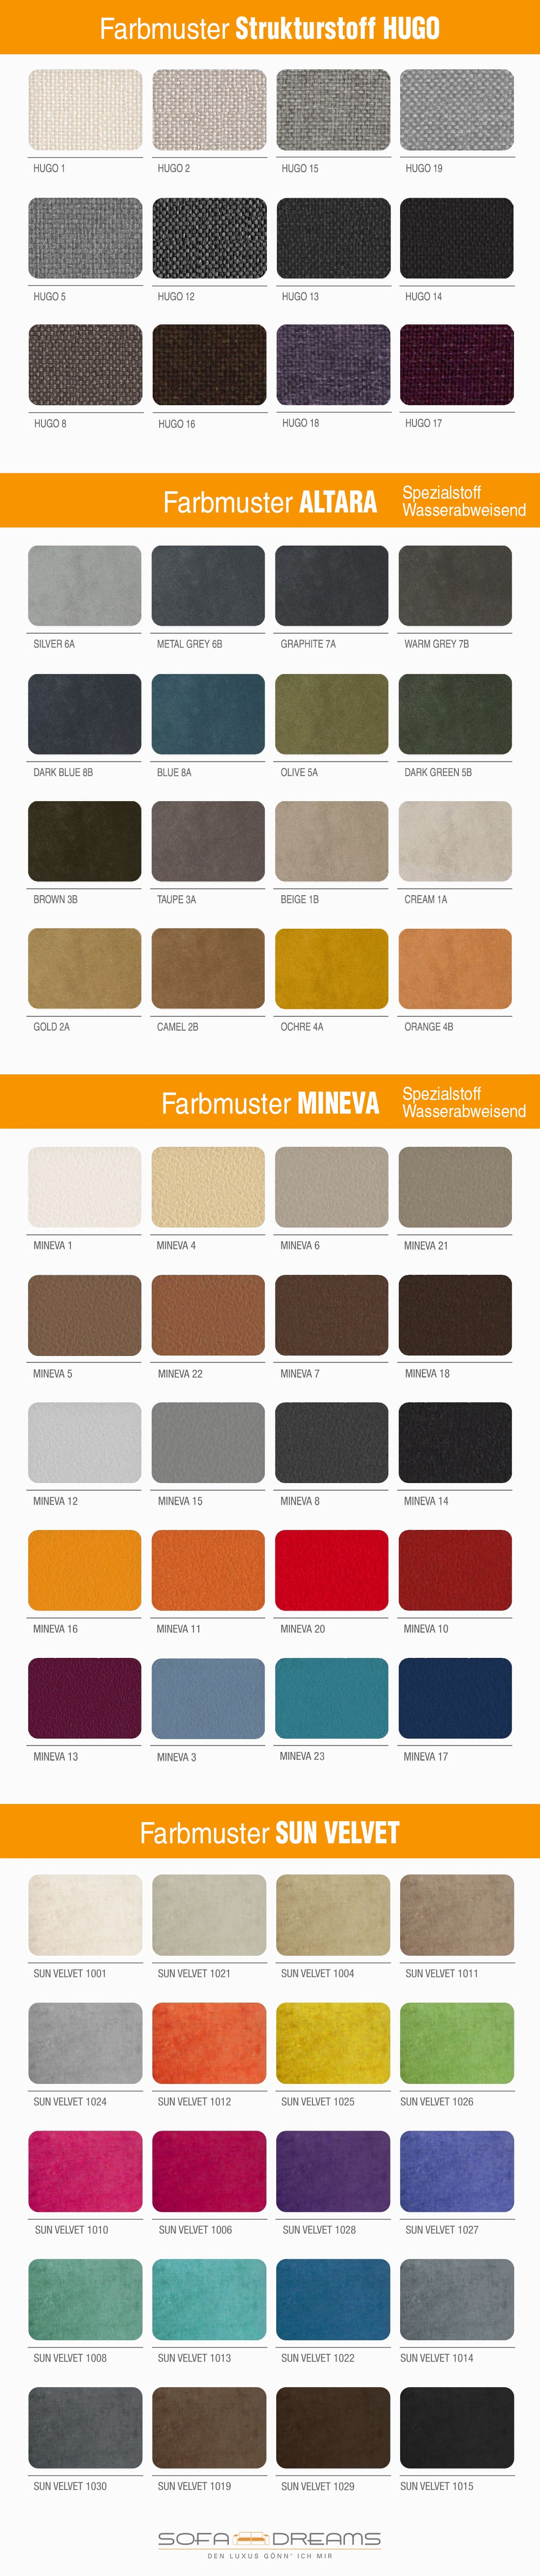 Alle Farben unserer Stoffe für Ihr neues Sofa